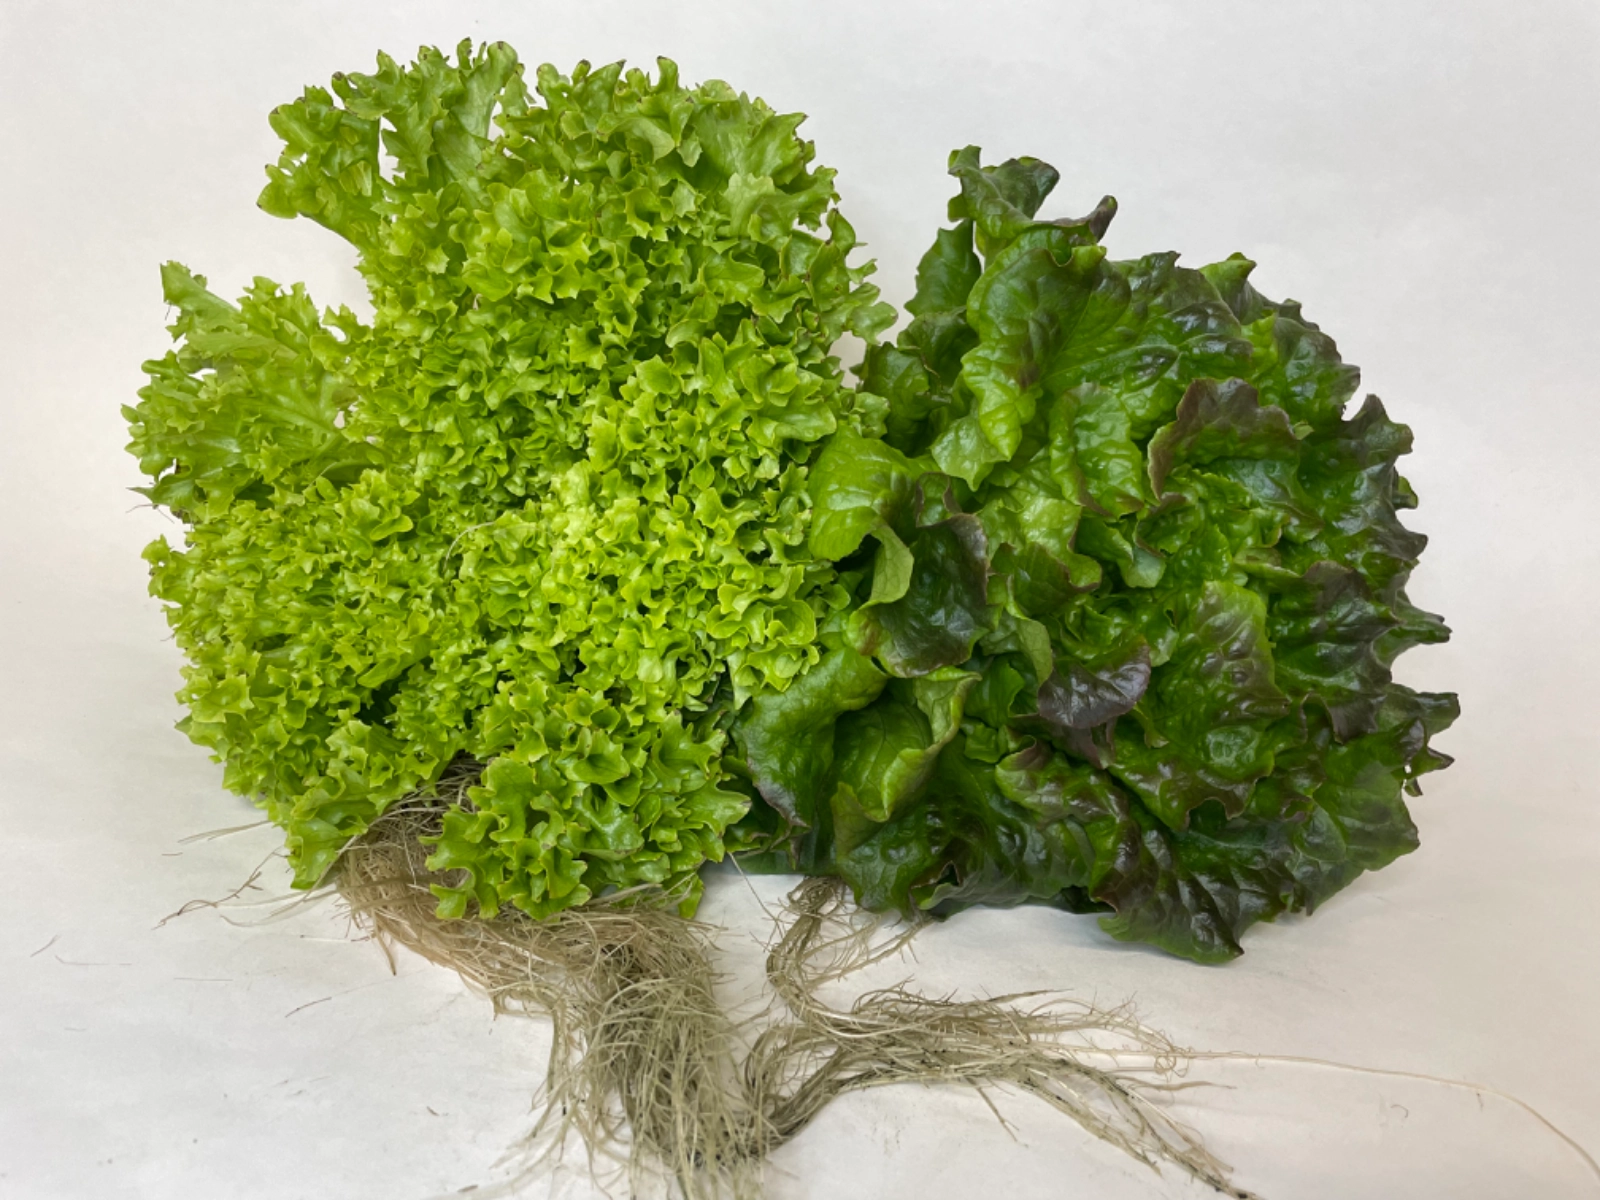 two-heads-of-various-salanova-lettuce-